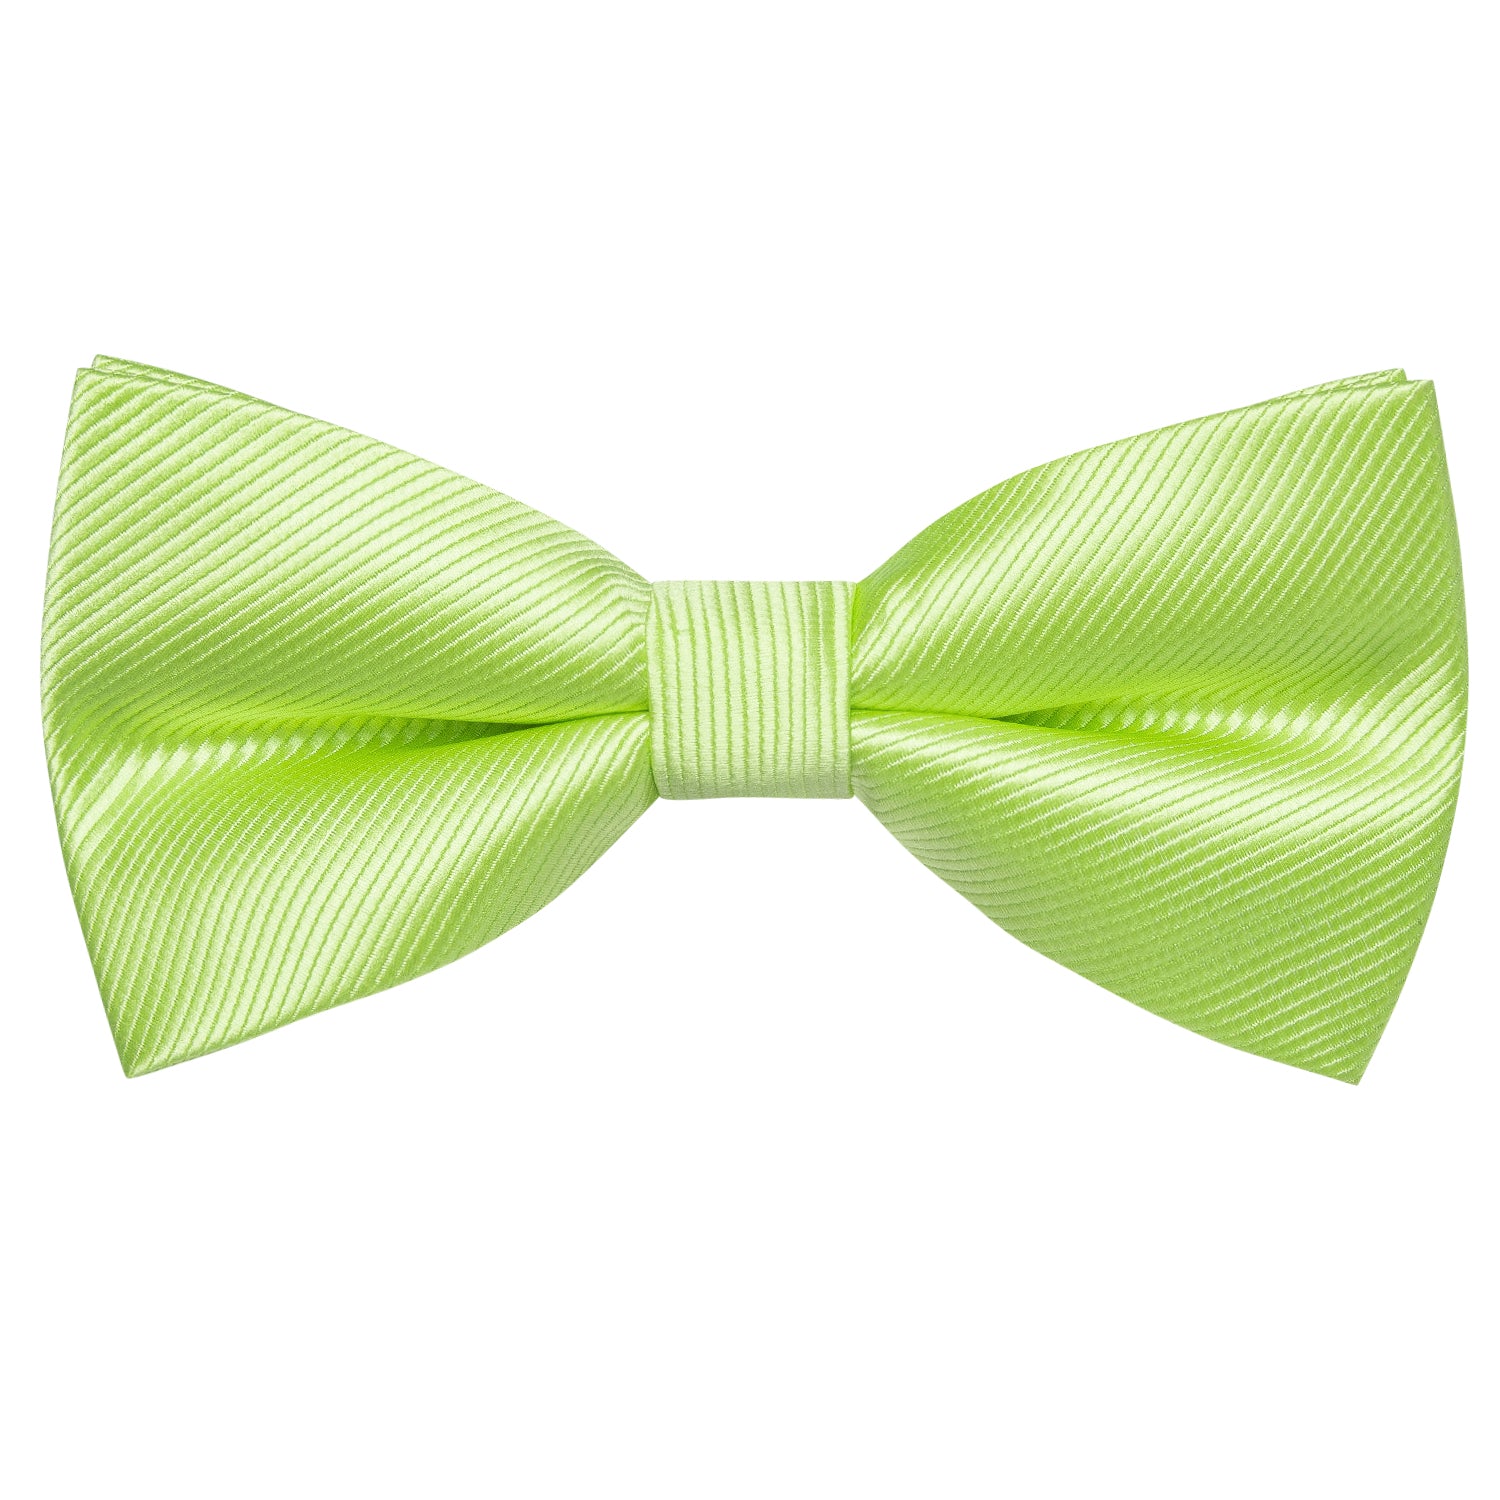 Apple Green Striped Pre-tied Bow Tie Hanky Cufflinks Set